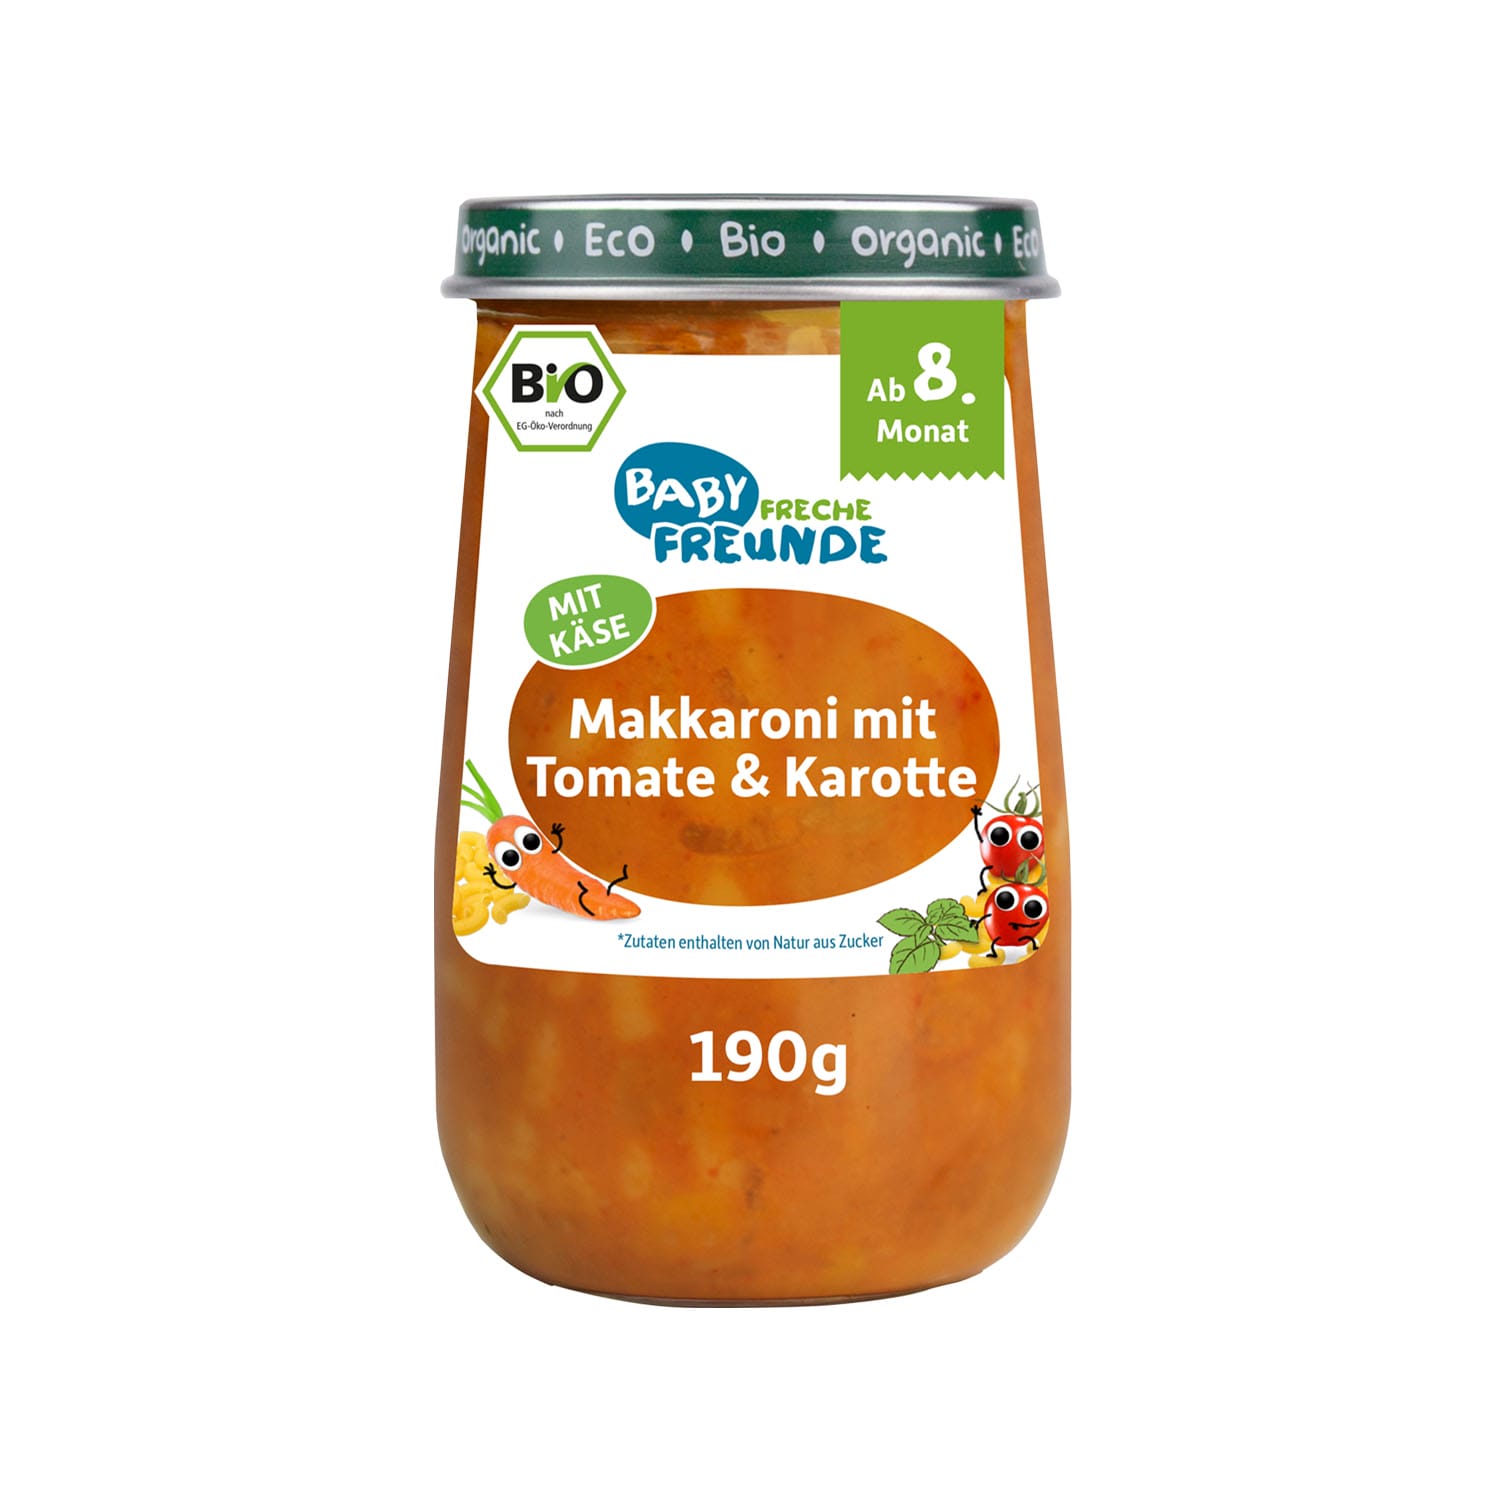 Glaeschen_Makkaroni-Tomate-Karotte-vorderansicht